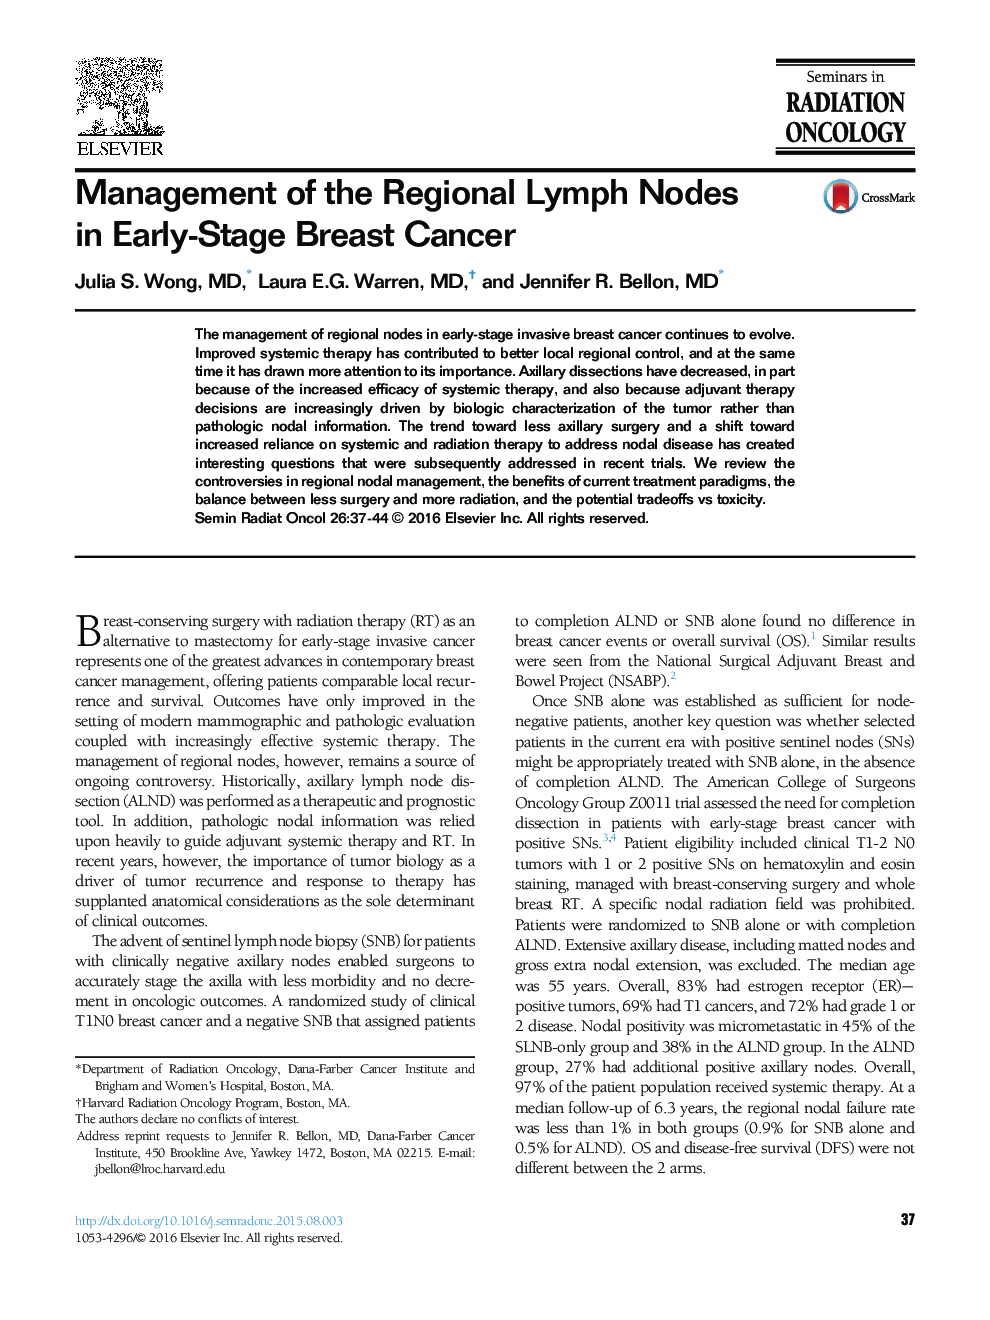 مدیریت گره های لنفاوی منطقه ای در مراحل اولیه سرطان پستان